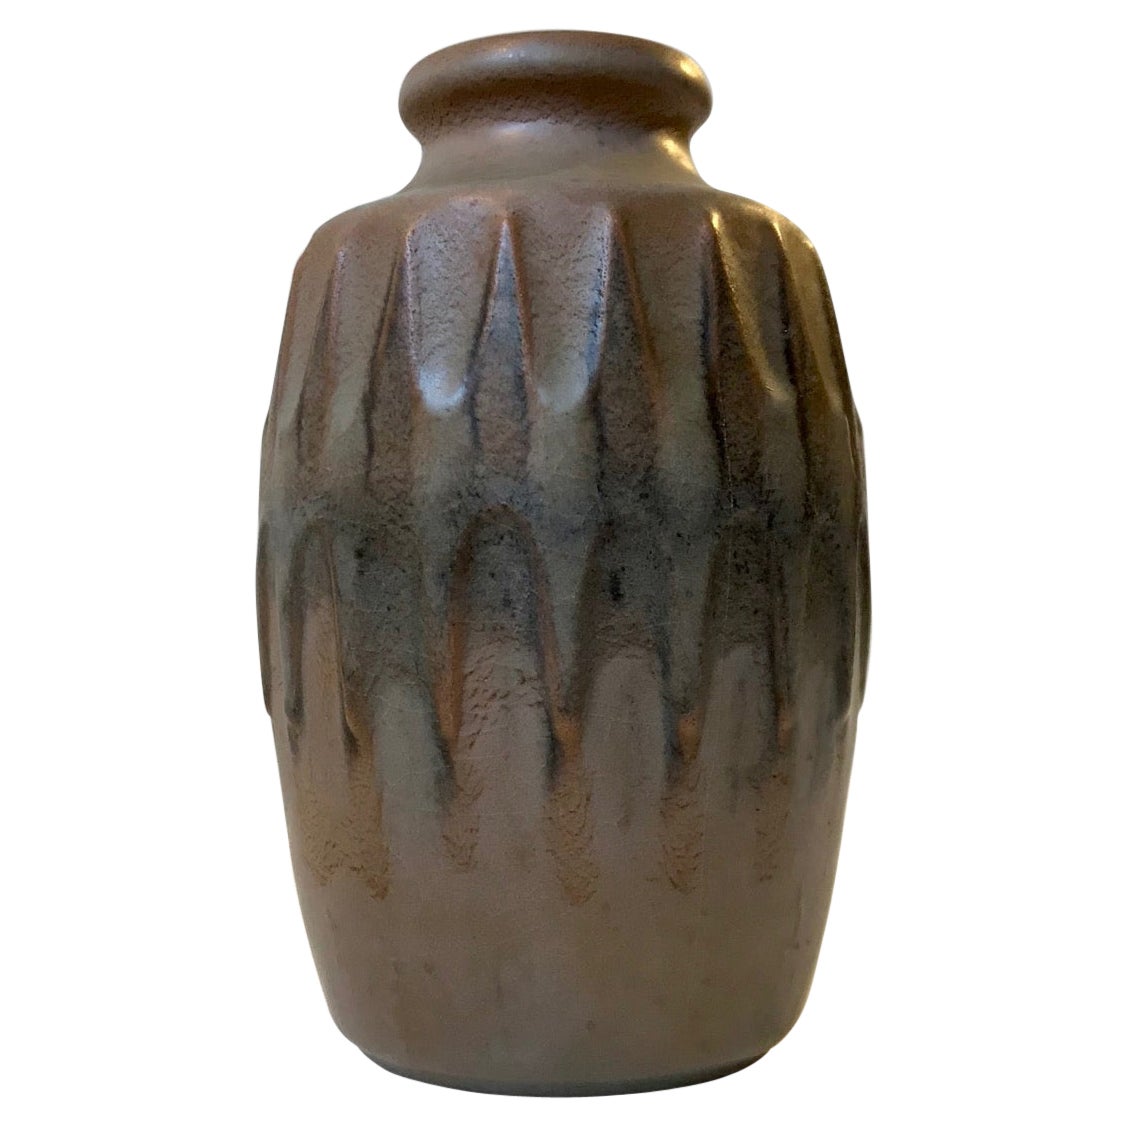 Scandinavian Pottery Vase with Camou Glaze by Günther Praschak for Knabstrup